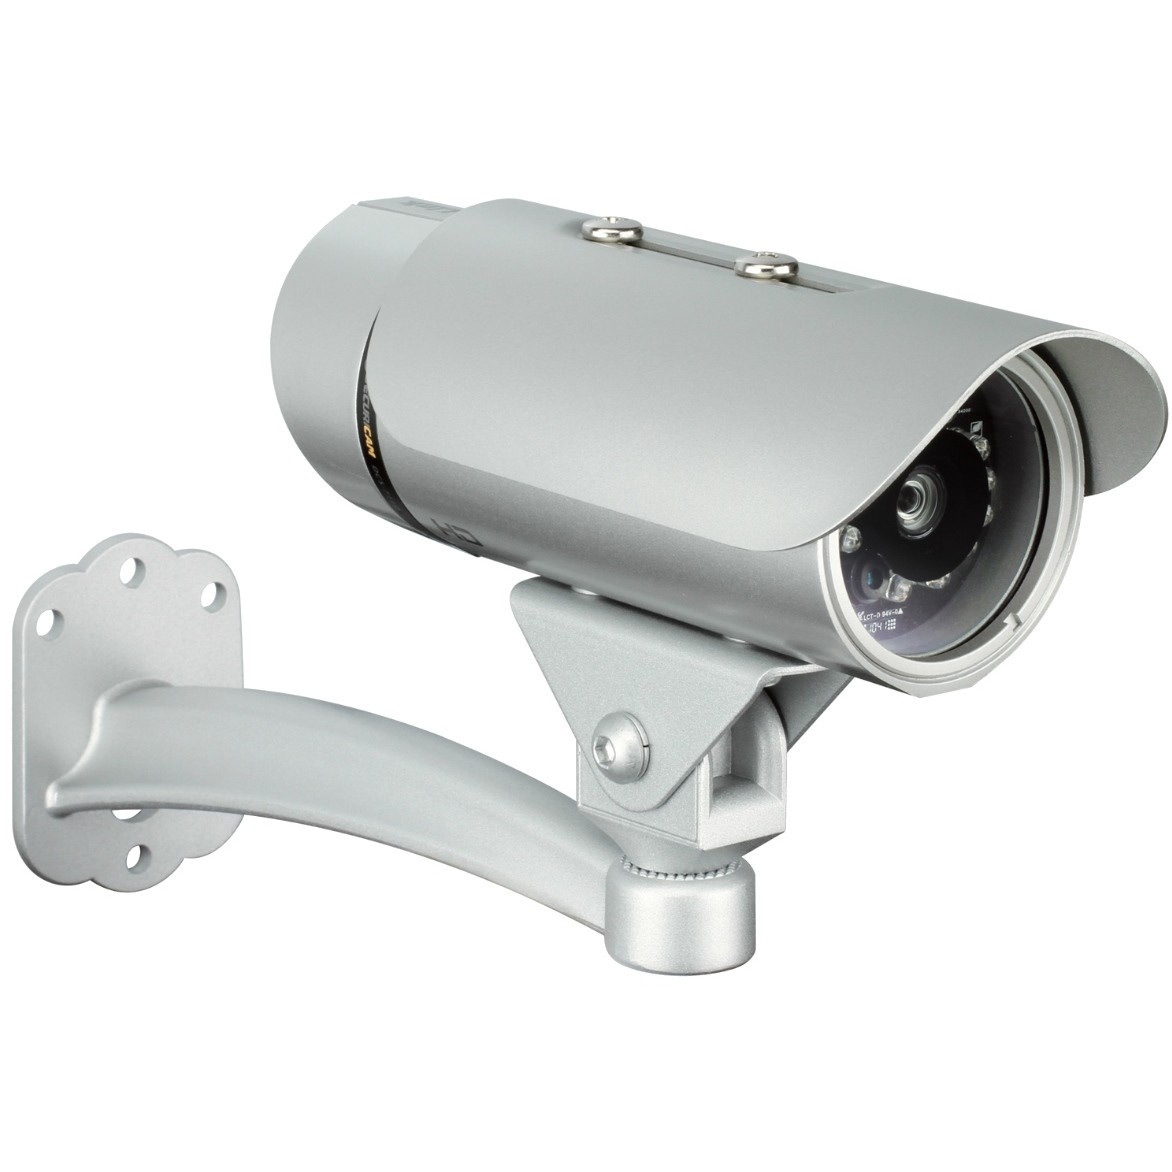 Купить камеру в туле. Камера видеонаблюдения (Тип-1, ММС). D link DCS 7110. HD-видеокамера d-link DCS-4701e/UPA/a3a. Камера видеонаблюдения GSS.